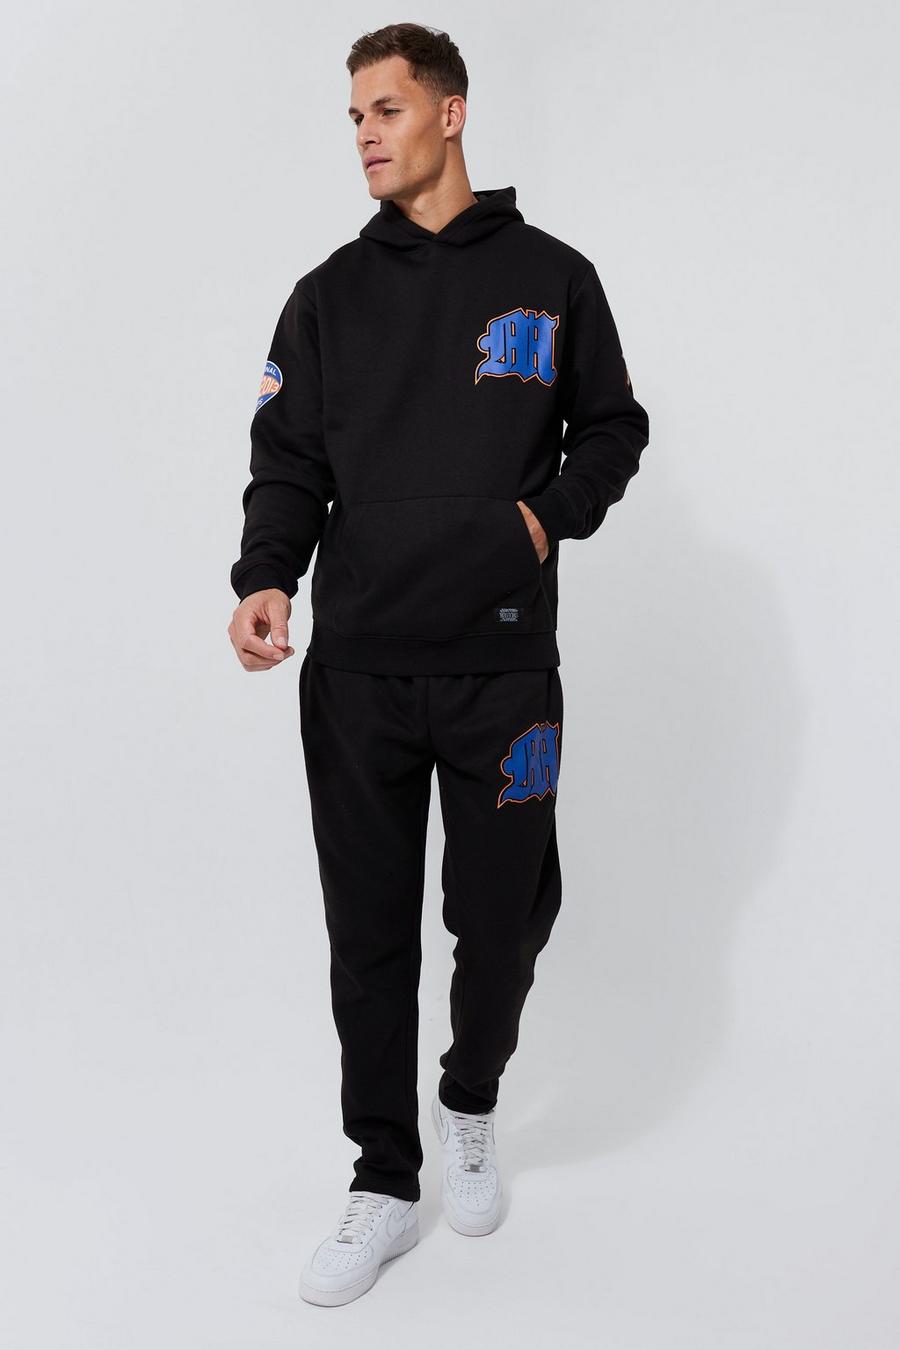 שחור nero חליפת טרנינג קפוצ'ון עם כיתוב M בסגנון גותי וטלאי בסגנון נבחרת ספורט, לגברים גבוהים